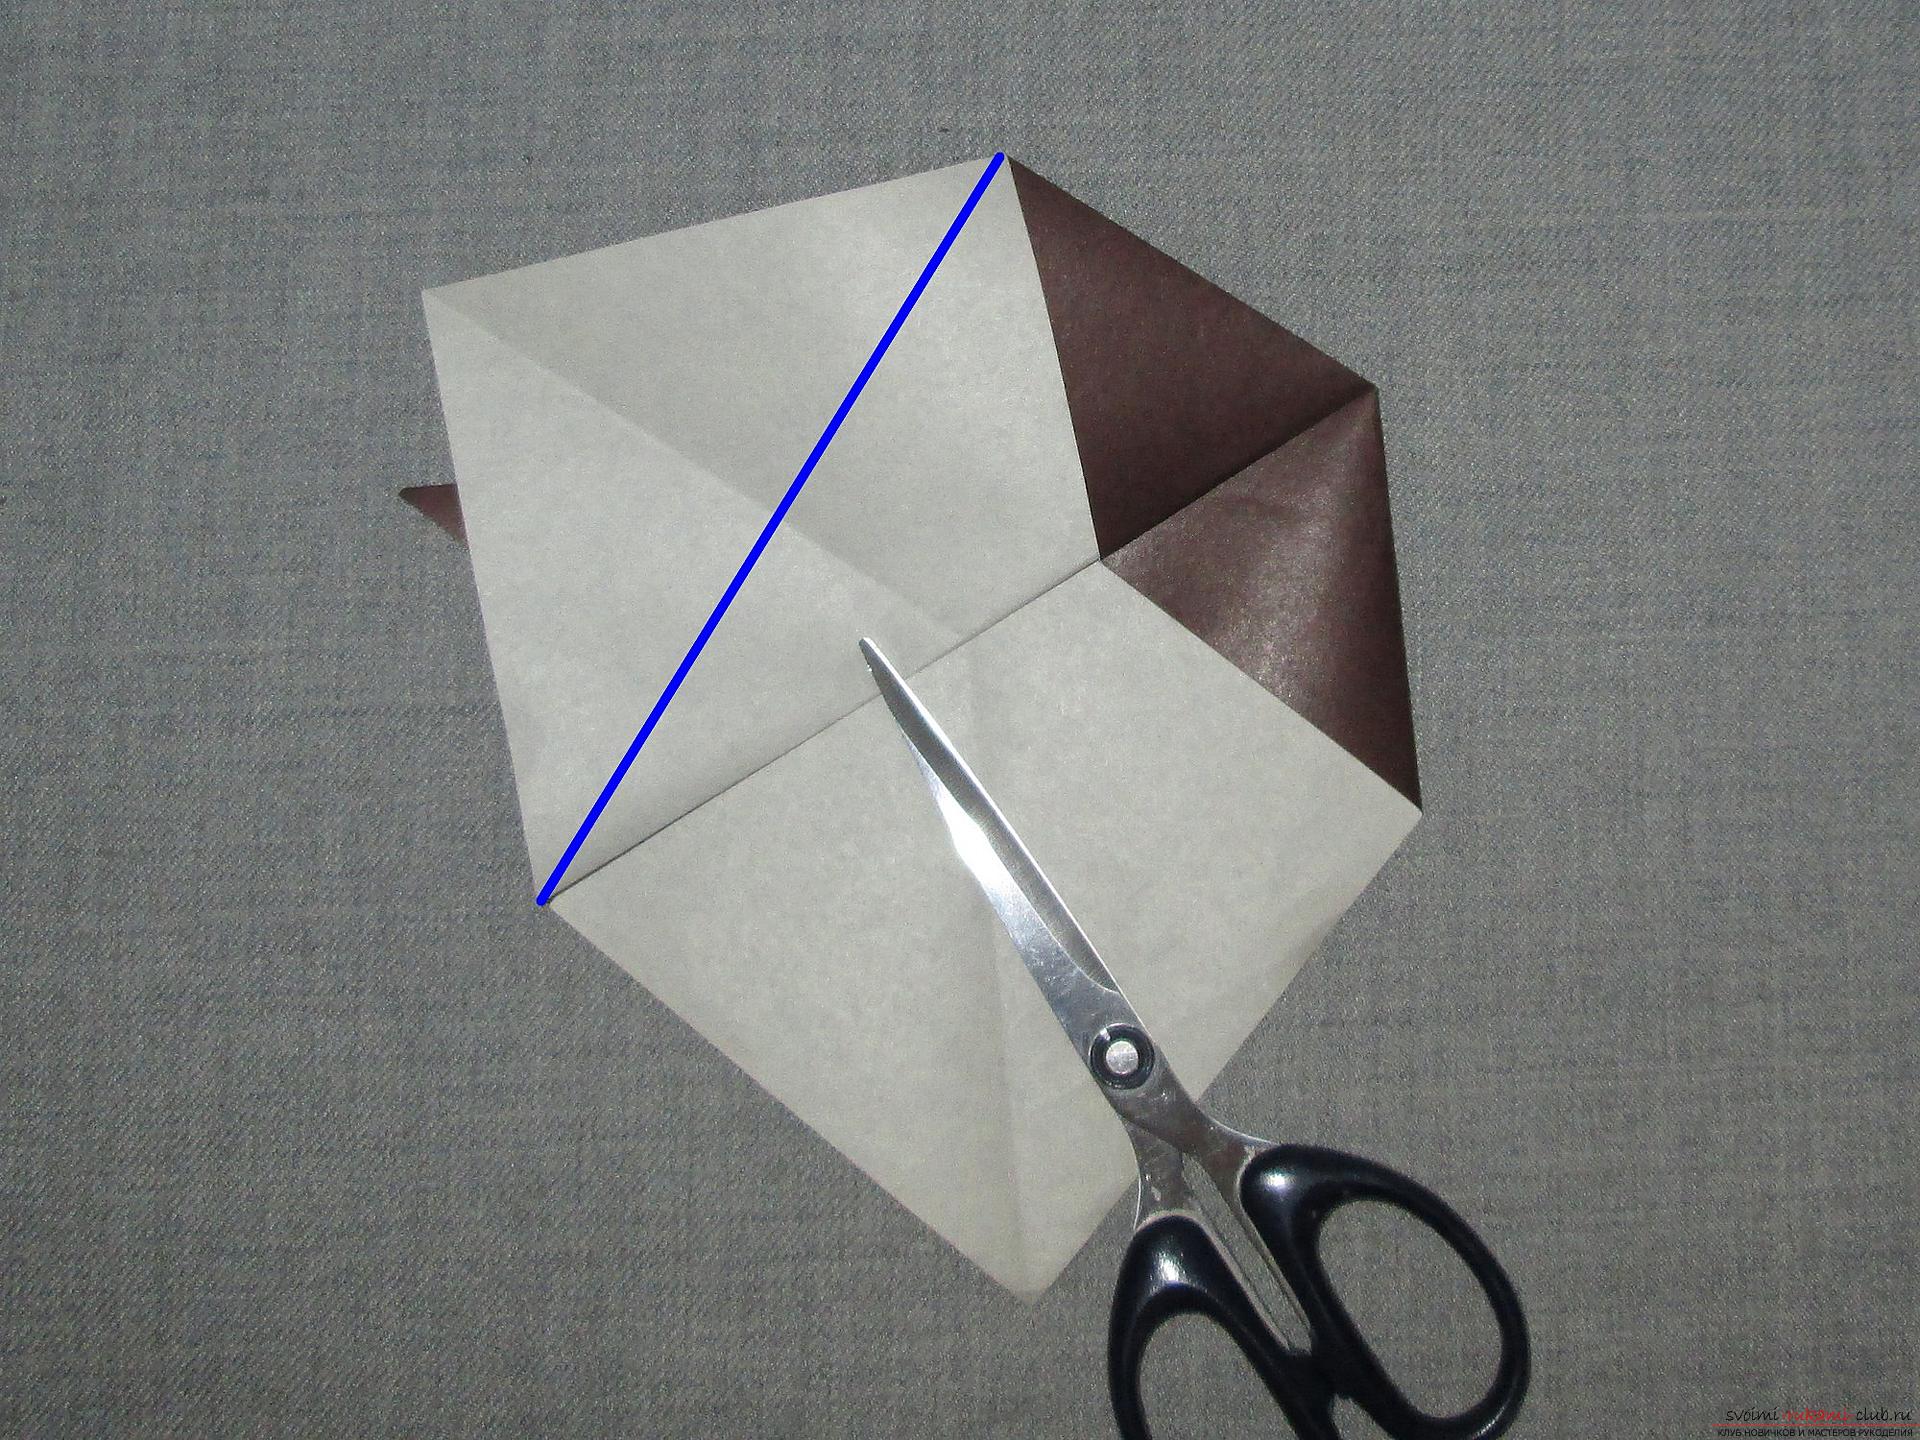 Этот подробный мастер-класс с фото и описание научит как сделать оригами для начинающих - оригами-собаку из бумаги.. Фото №8